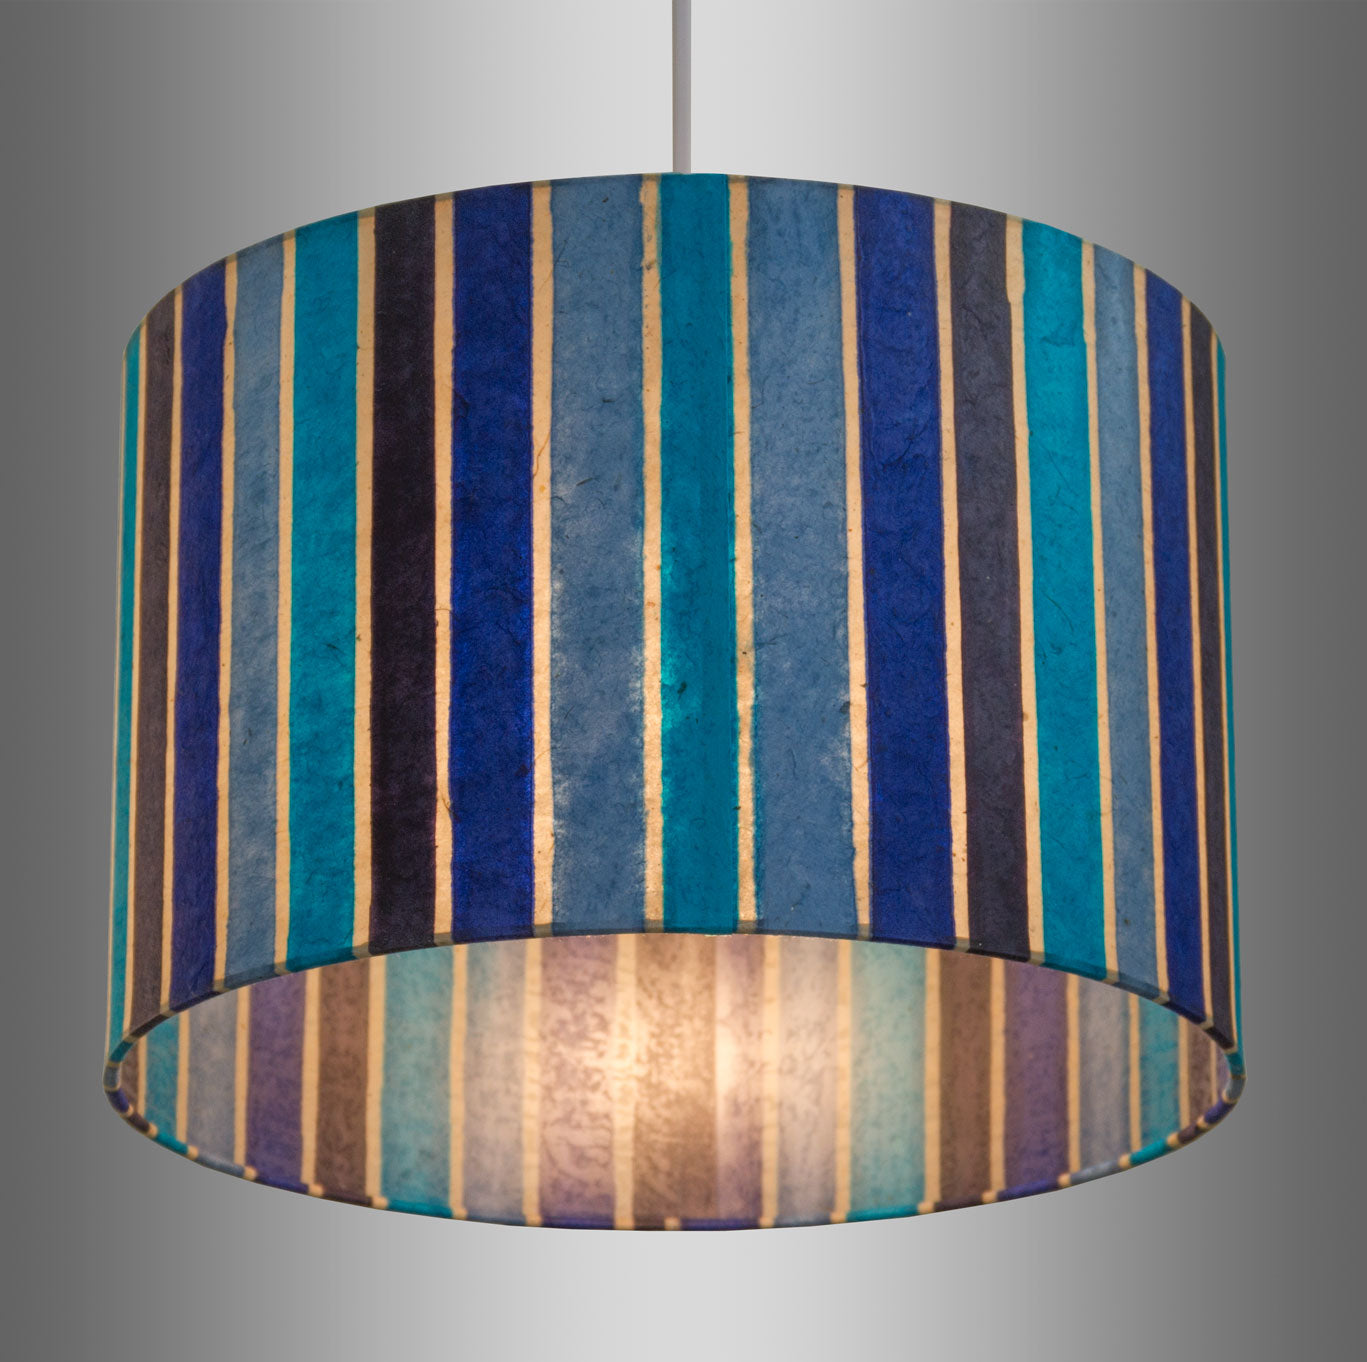 Drum Lamp Shade - P05 - Batik Stripes Blue, 30cm(d) x 30cm(h)